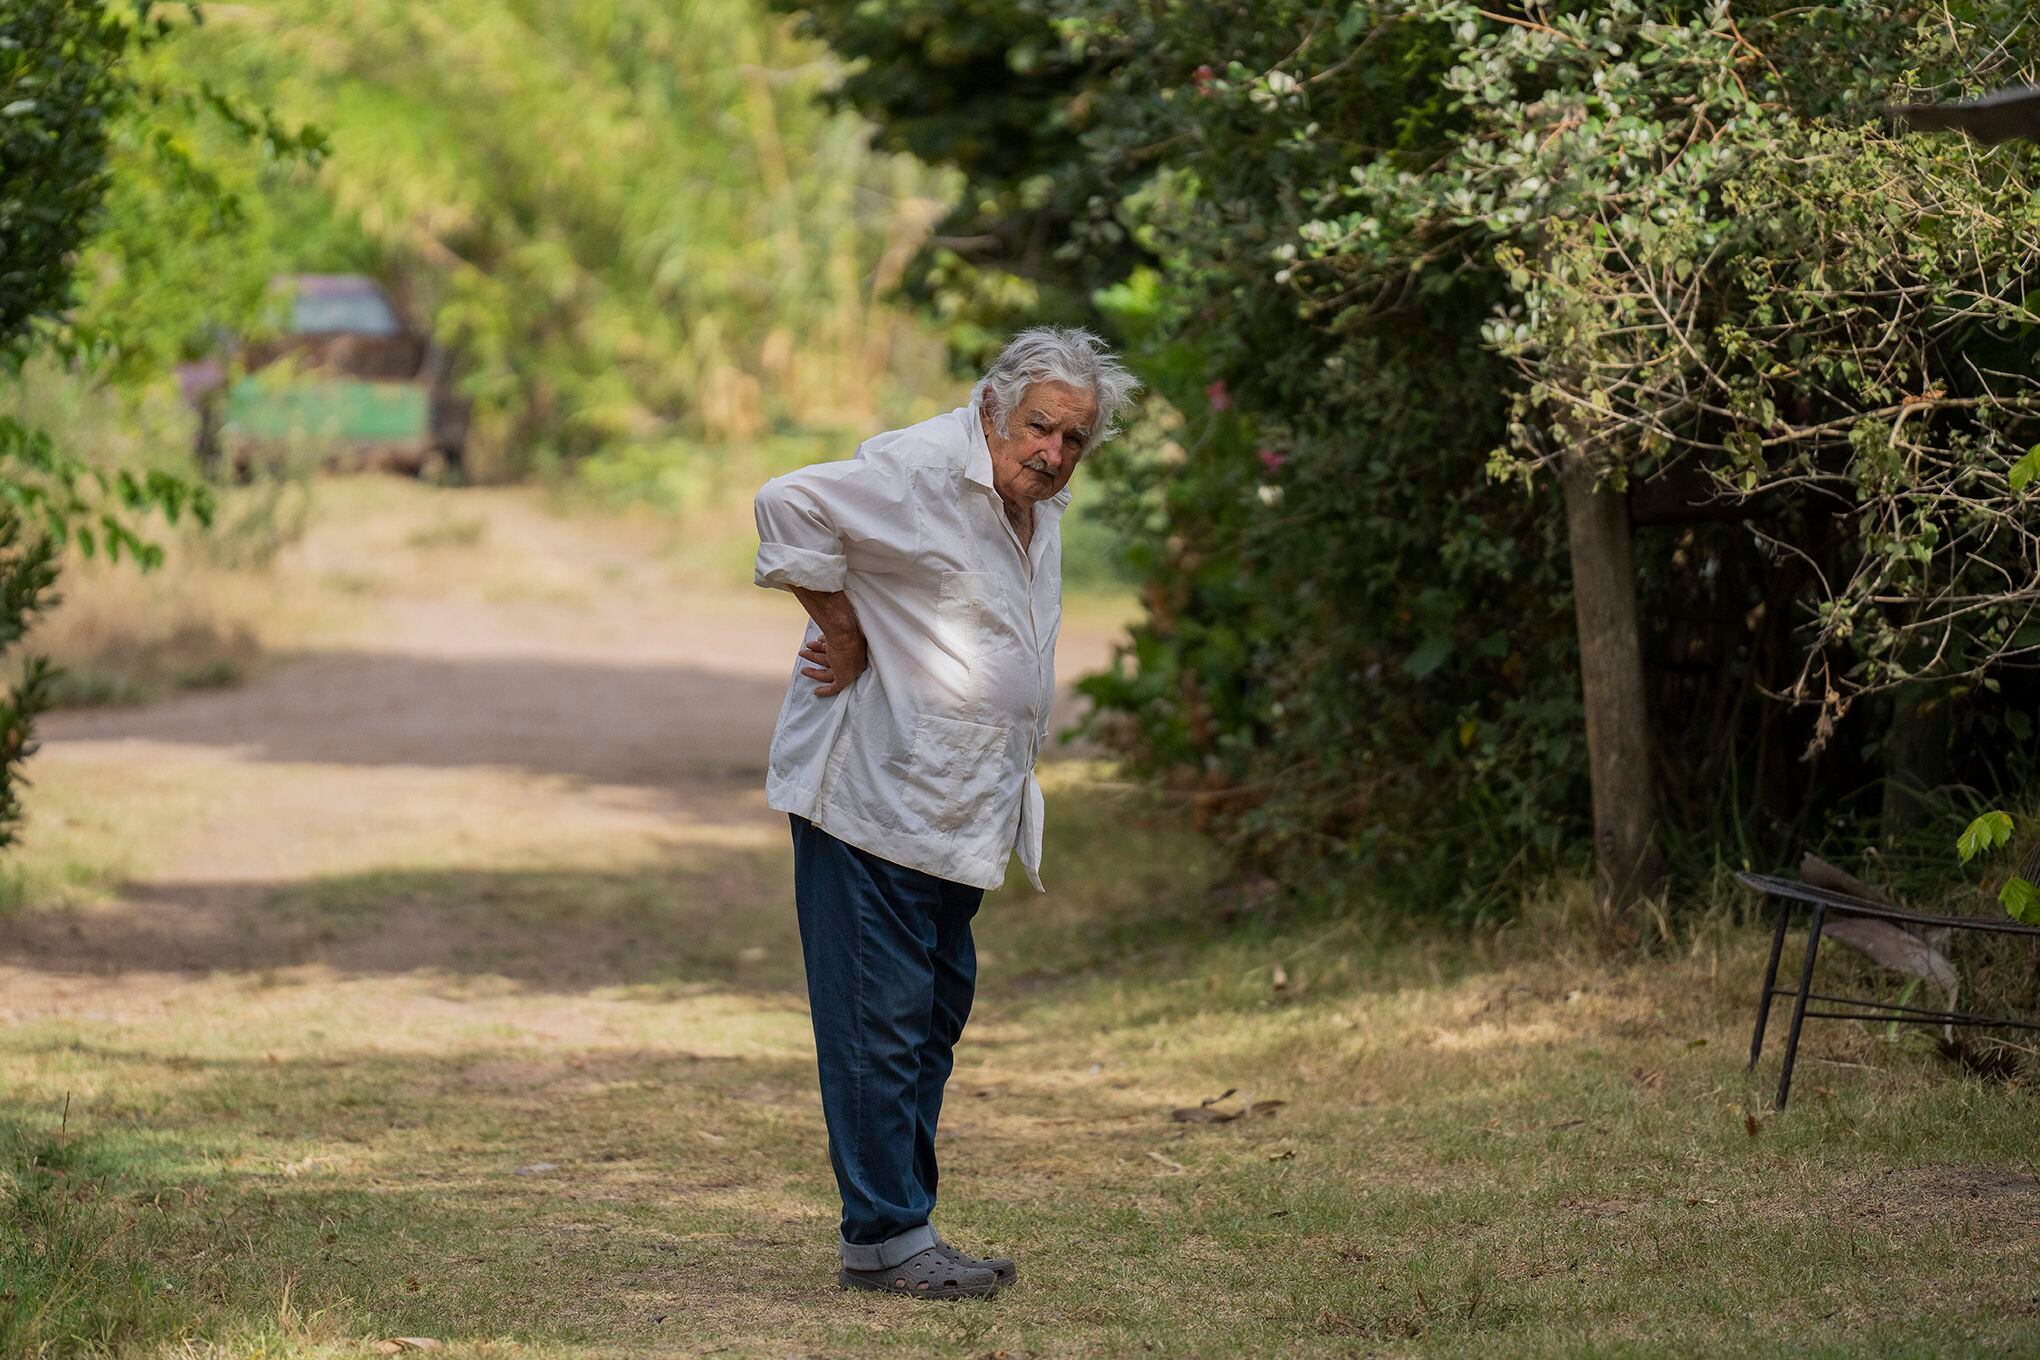 josé ‘pepe’ mujica, expresidente de uruguay, tiene un tumor en el esófago: “la vida es hermosa, y se gasta y se va”